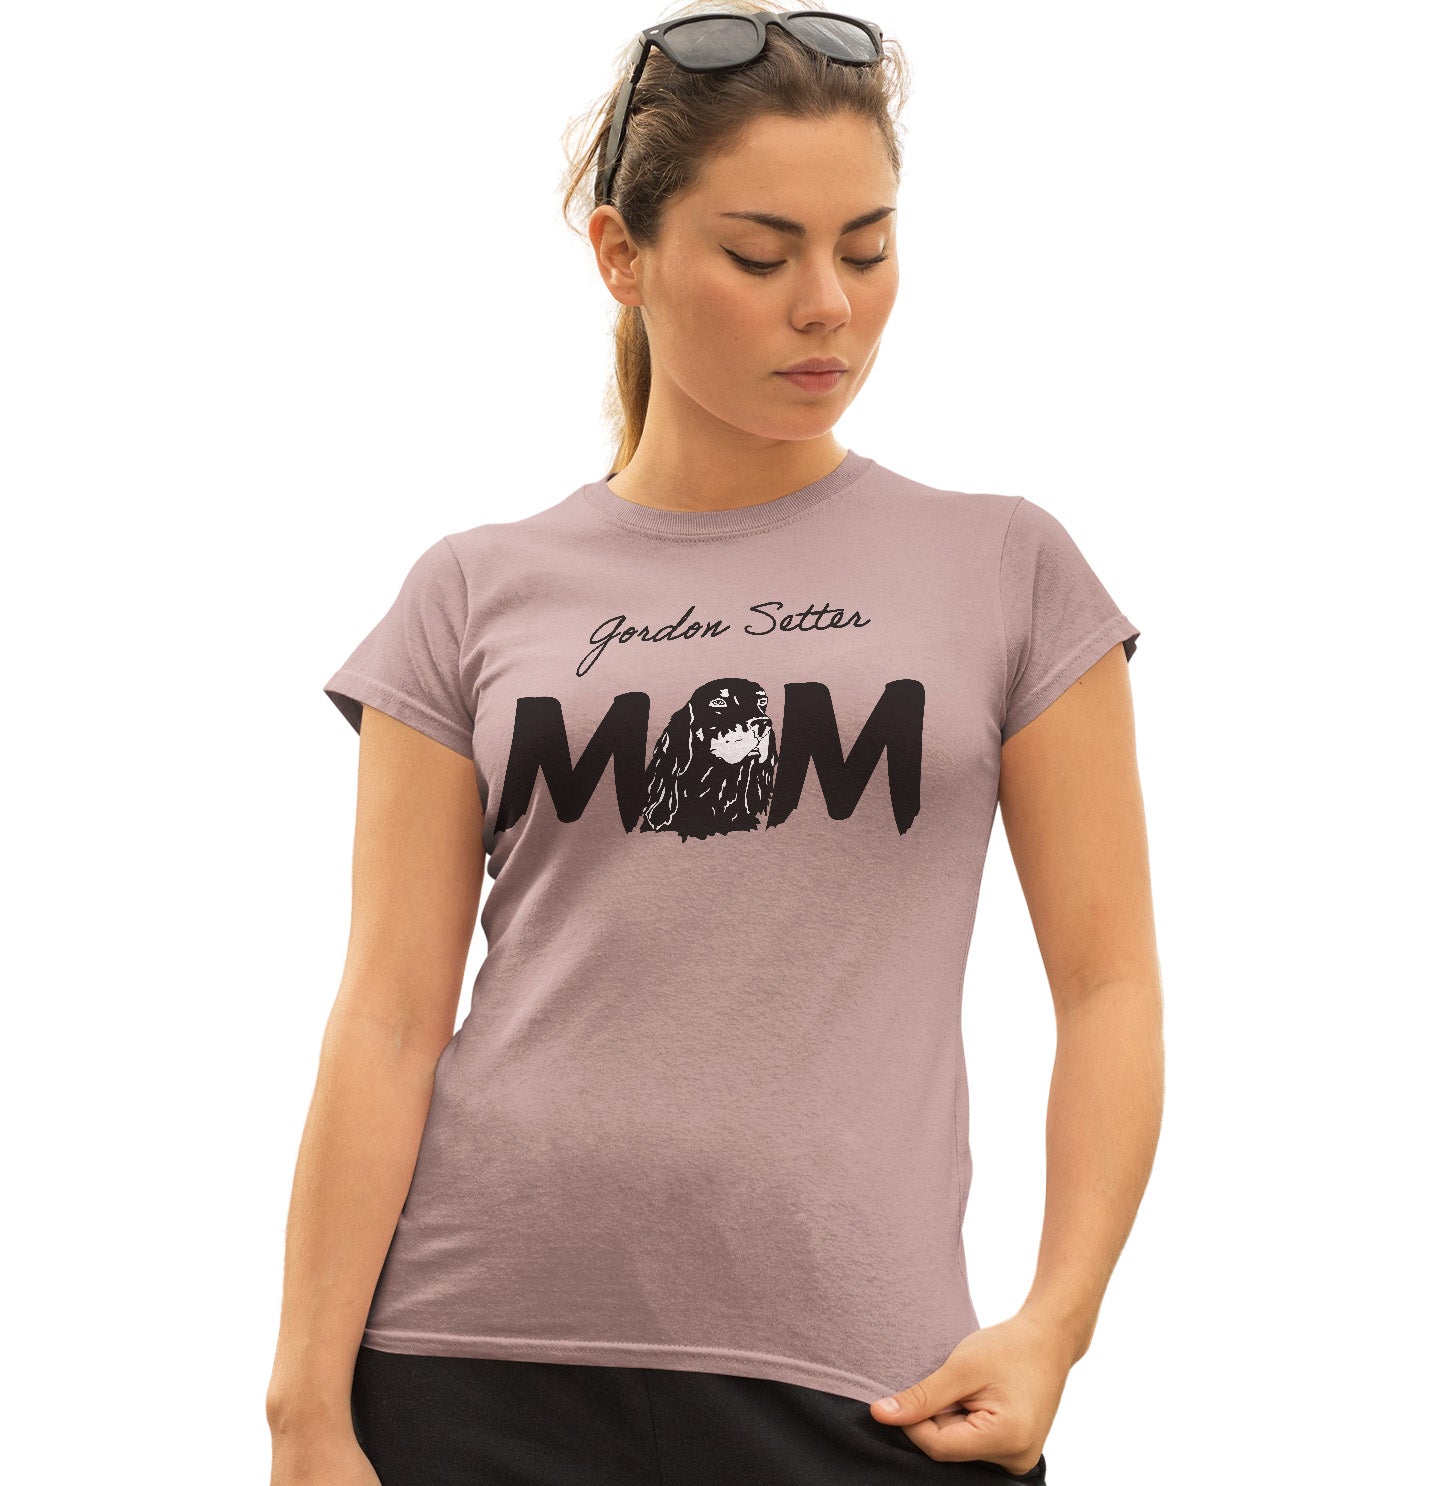 Gordon Setter Breed Mom - Women's Fitted T-Shirt